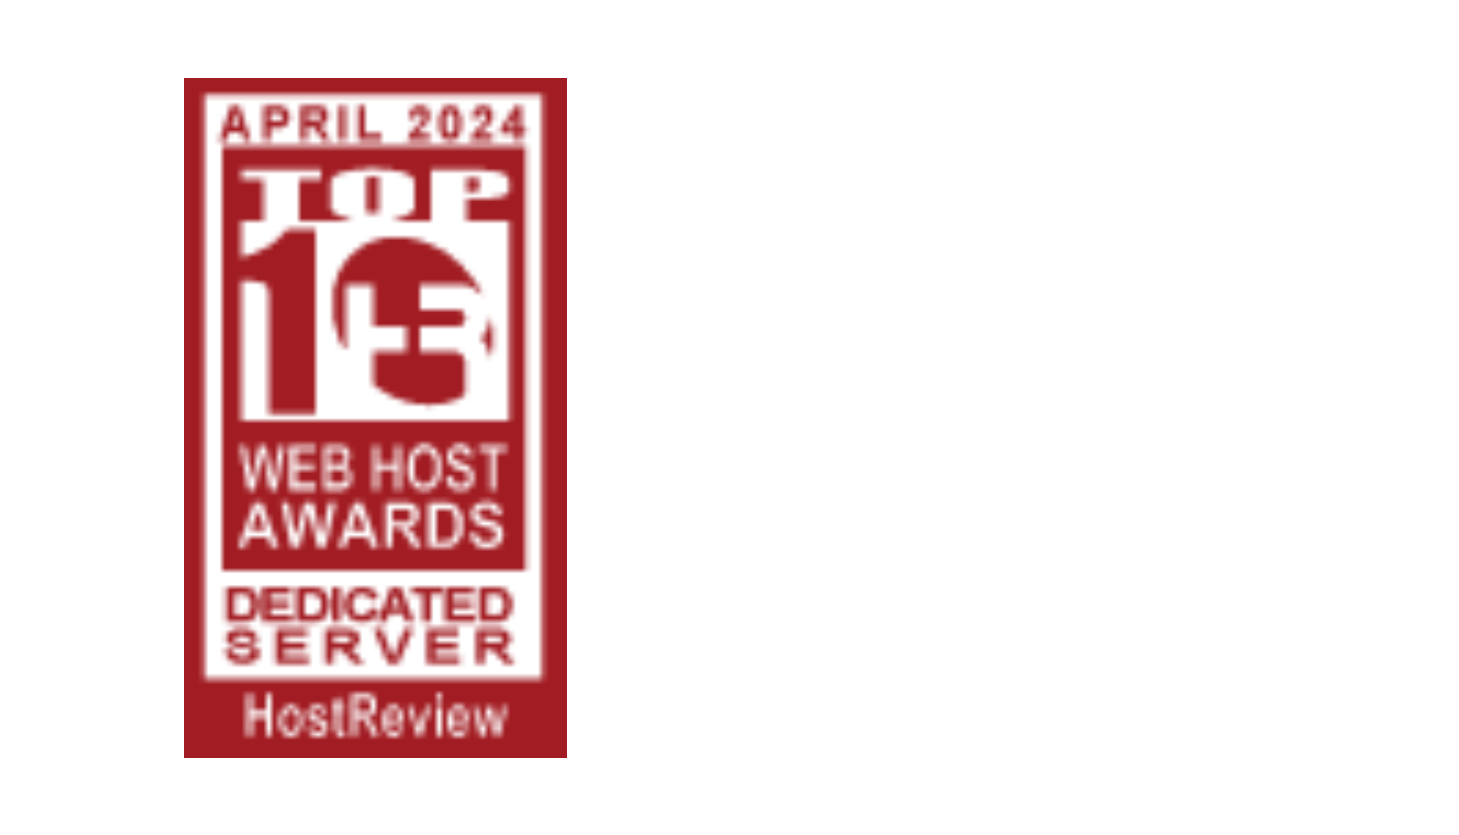 Best Dedicated Server for April 2024